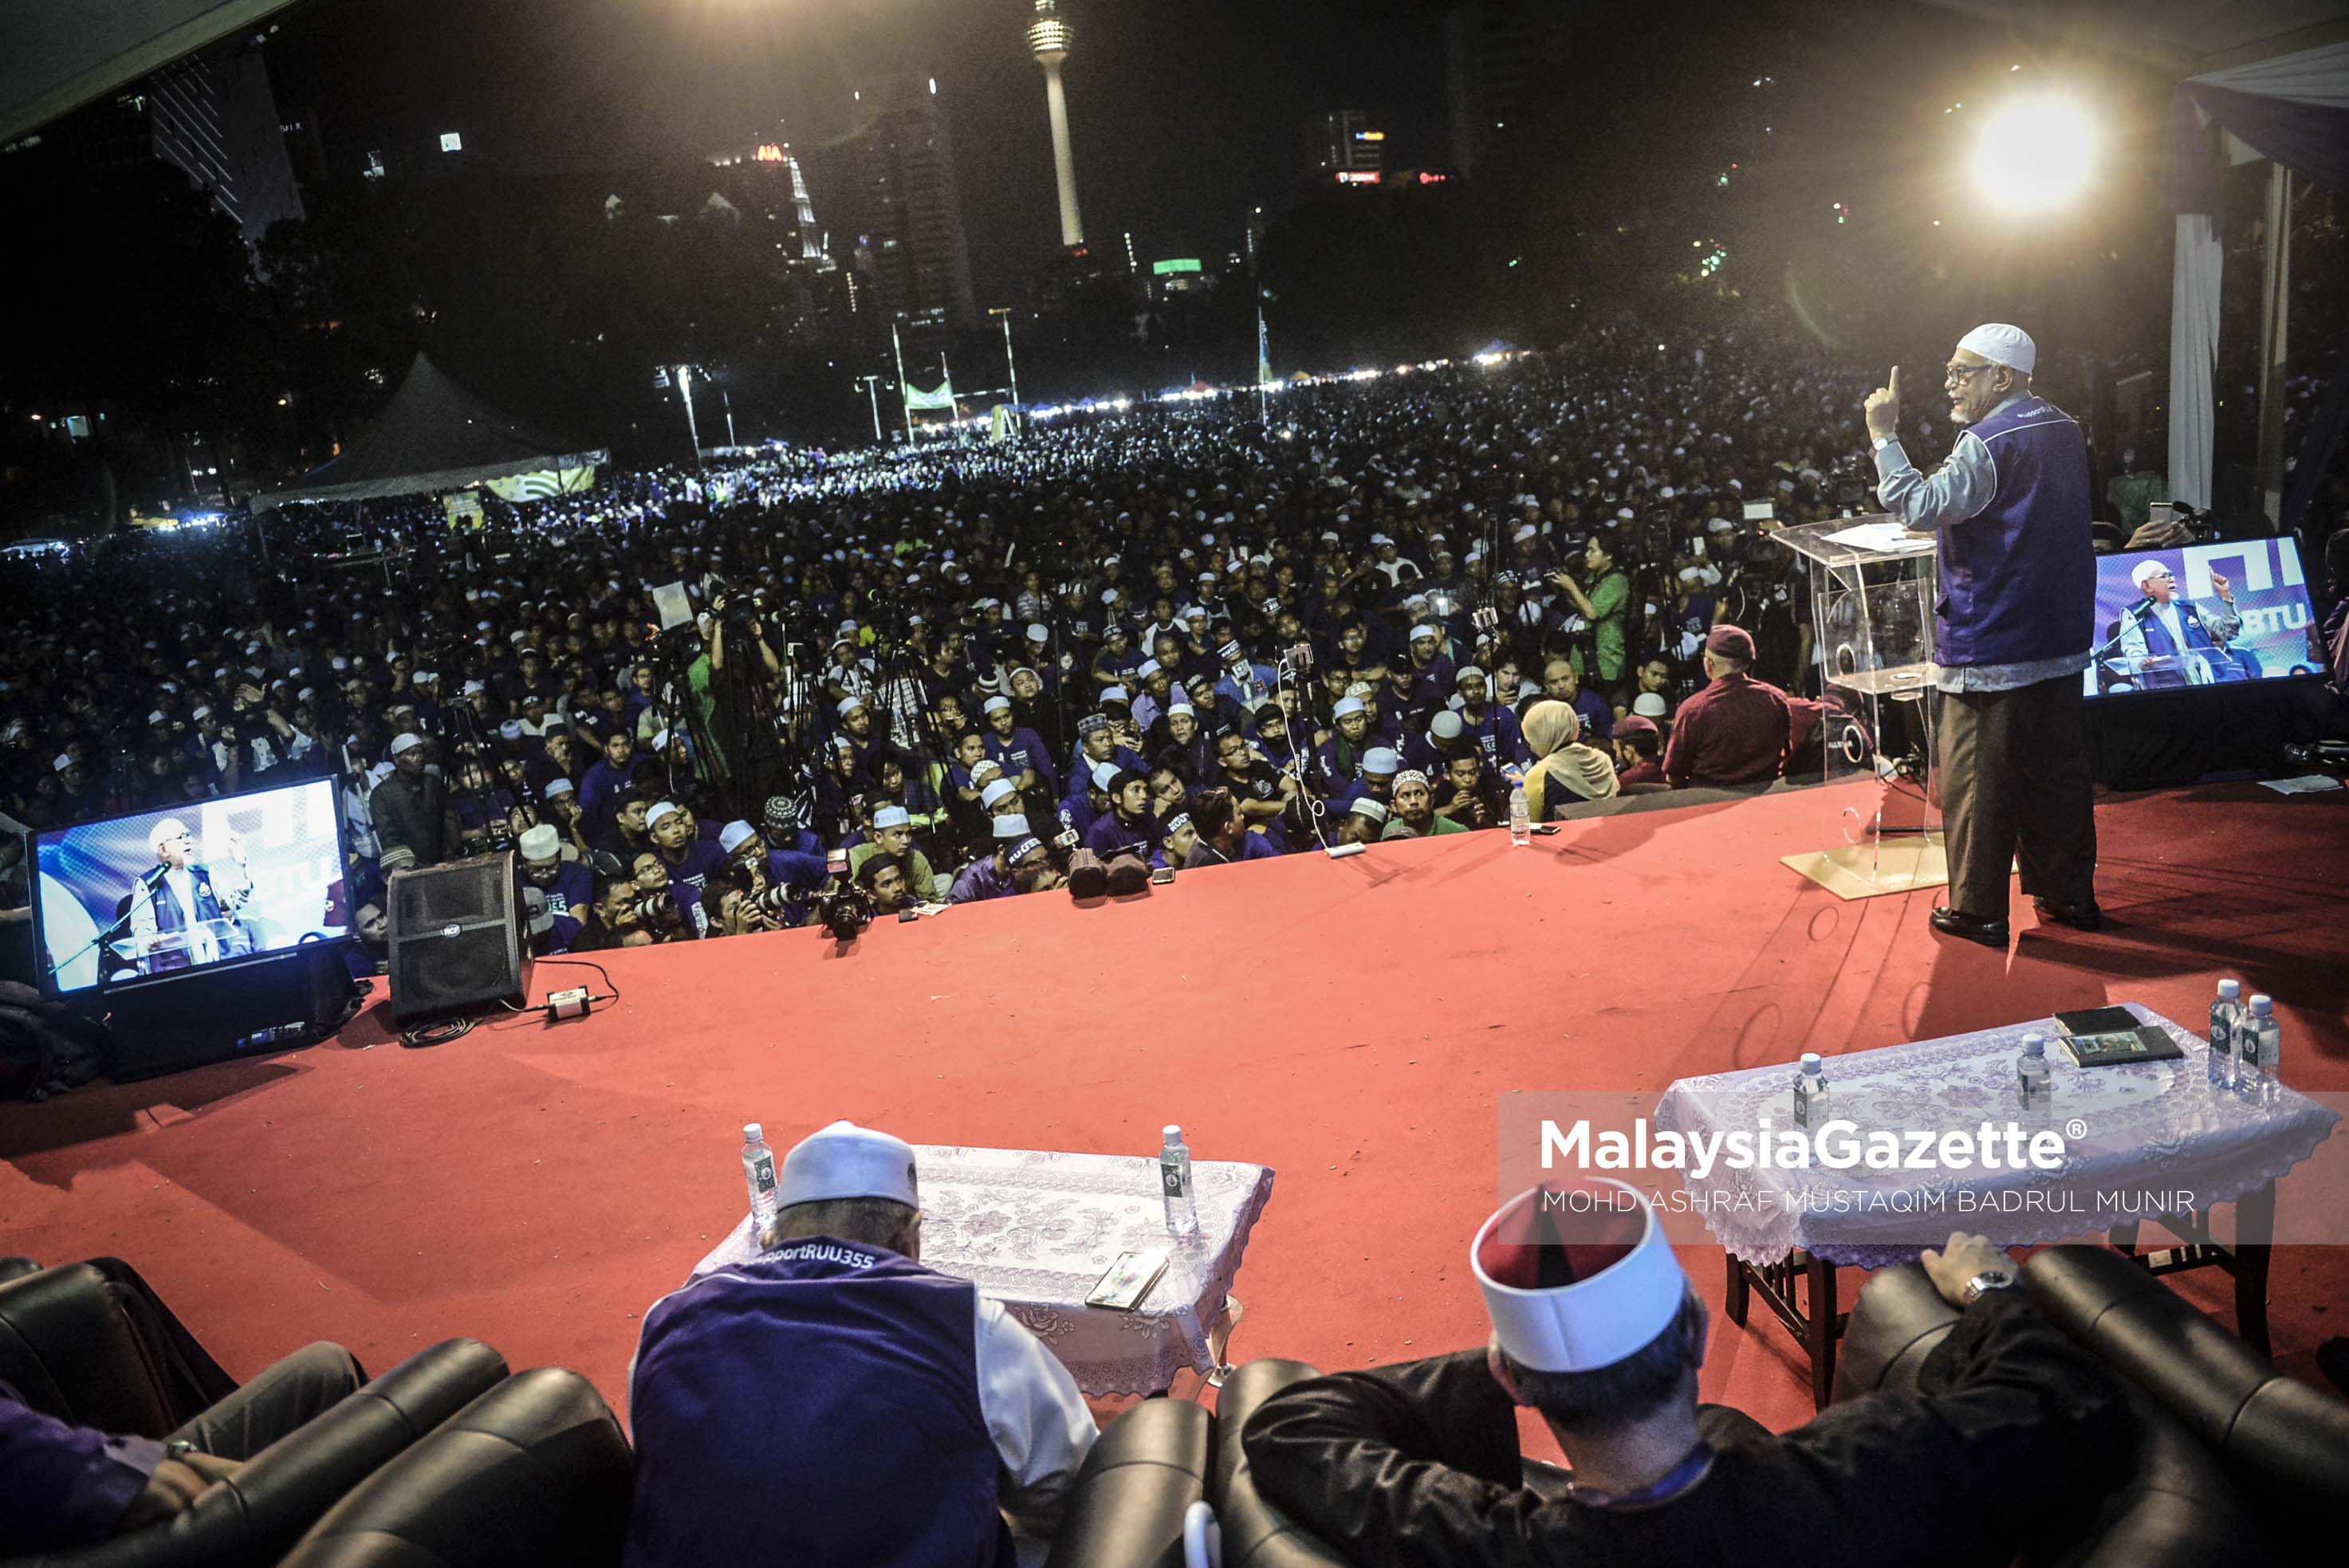 Presiden Pas, Datuk Seri Hadi Awang berucap pada Himpunan RUU 355 di Padang Merbok, Kuala Lumpur. foto ASHRAF MUSTAQIM BADRUL MUNIR, 18 FEBRUARI 2017.